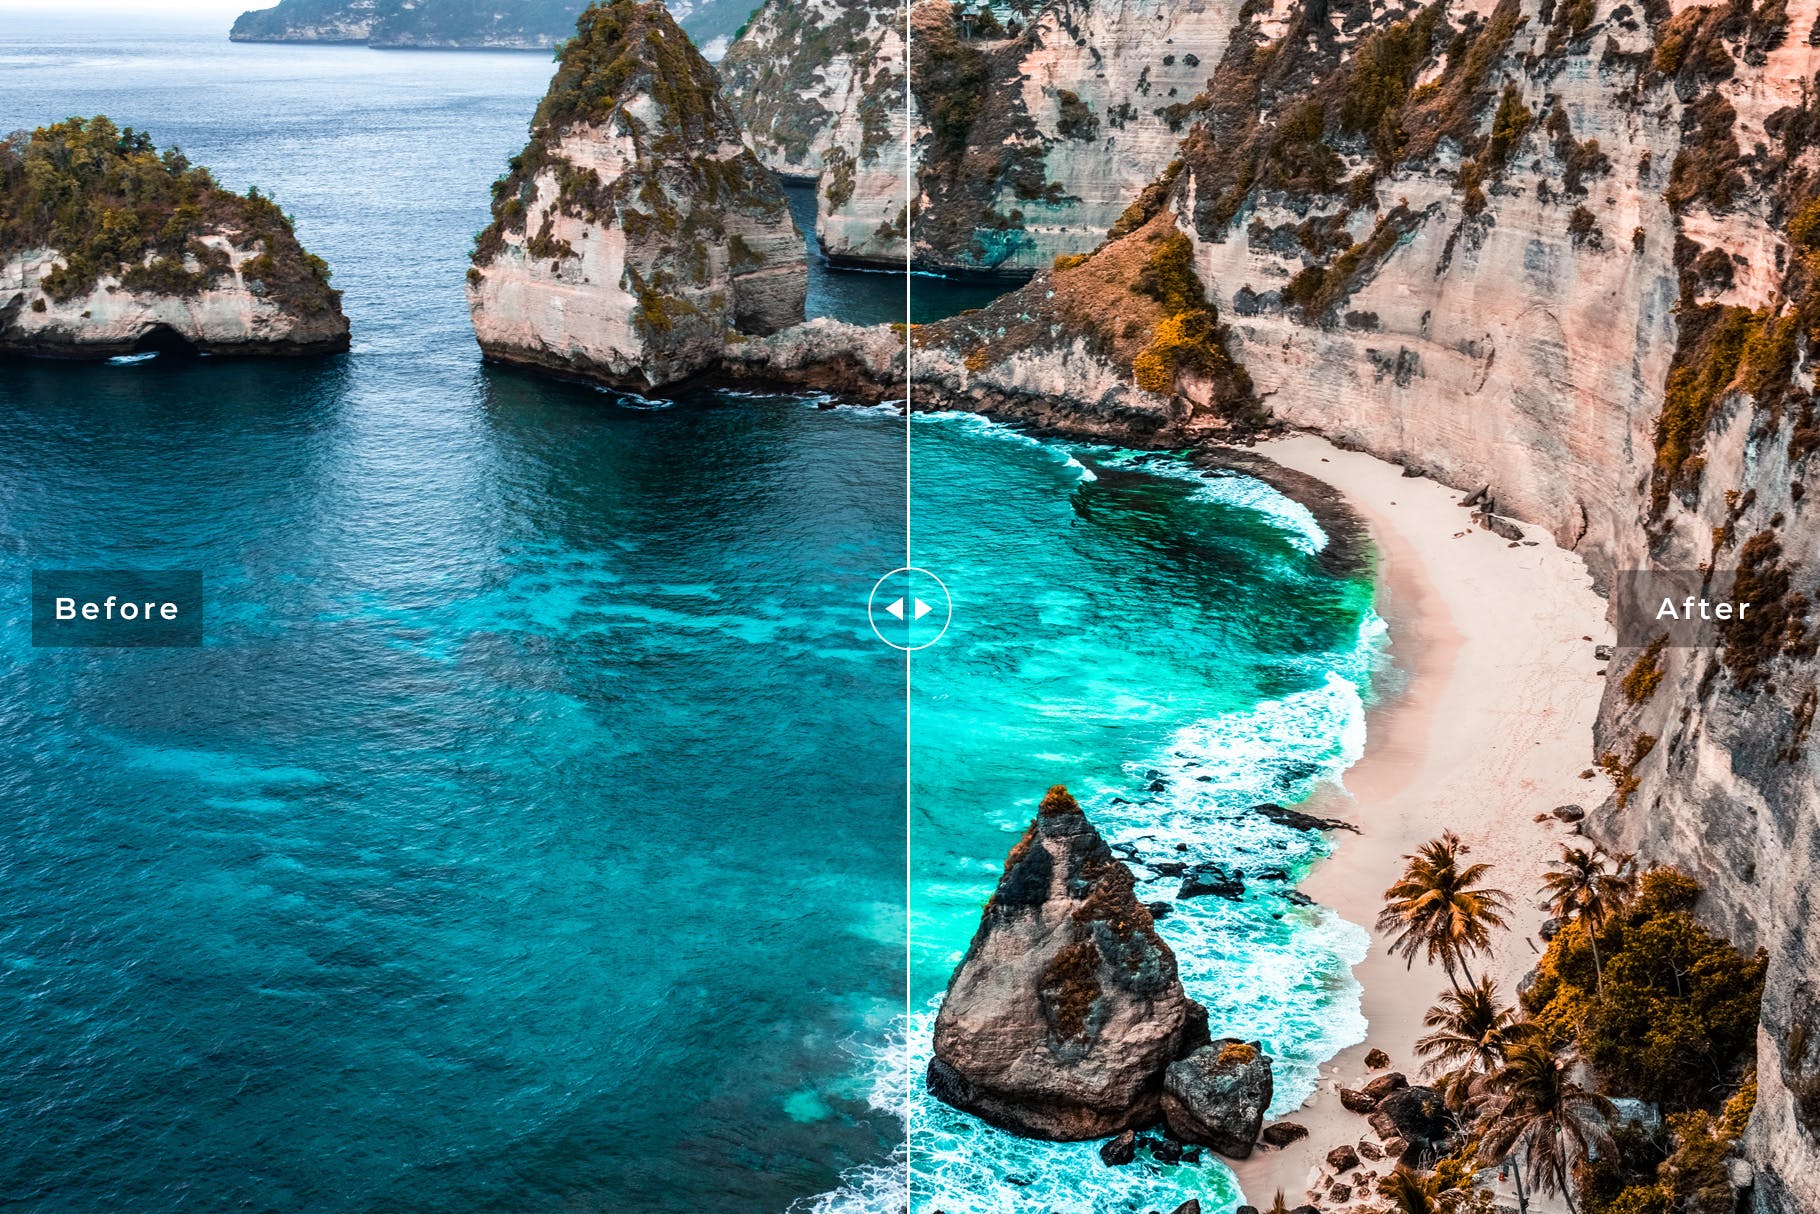 海洋蓝调色滤镜蚂蚁素材精选LR预设-海岛/沙滩/大海摄影调色绝配 Ocean Blue Mobile & Desktop Lightroom Presets插图(3)